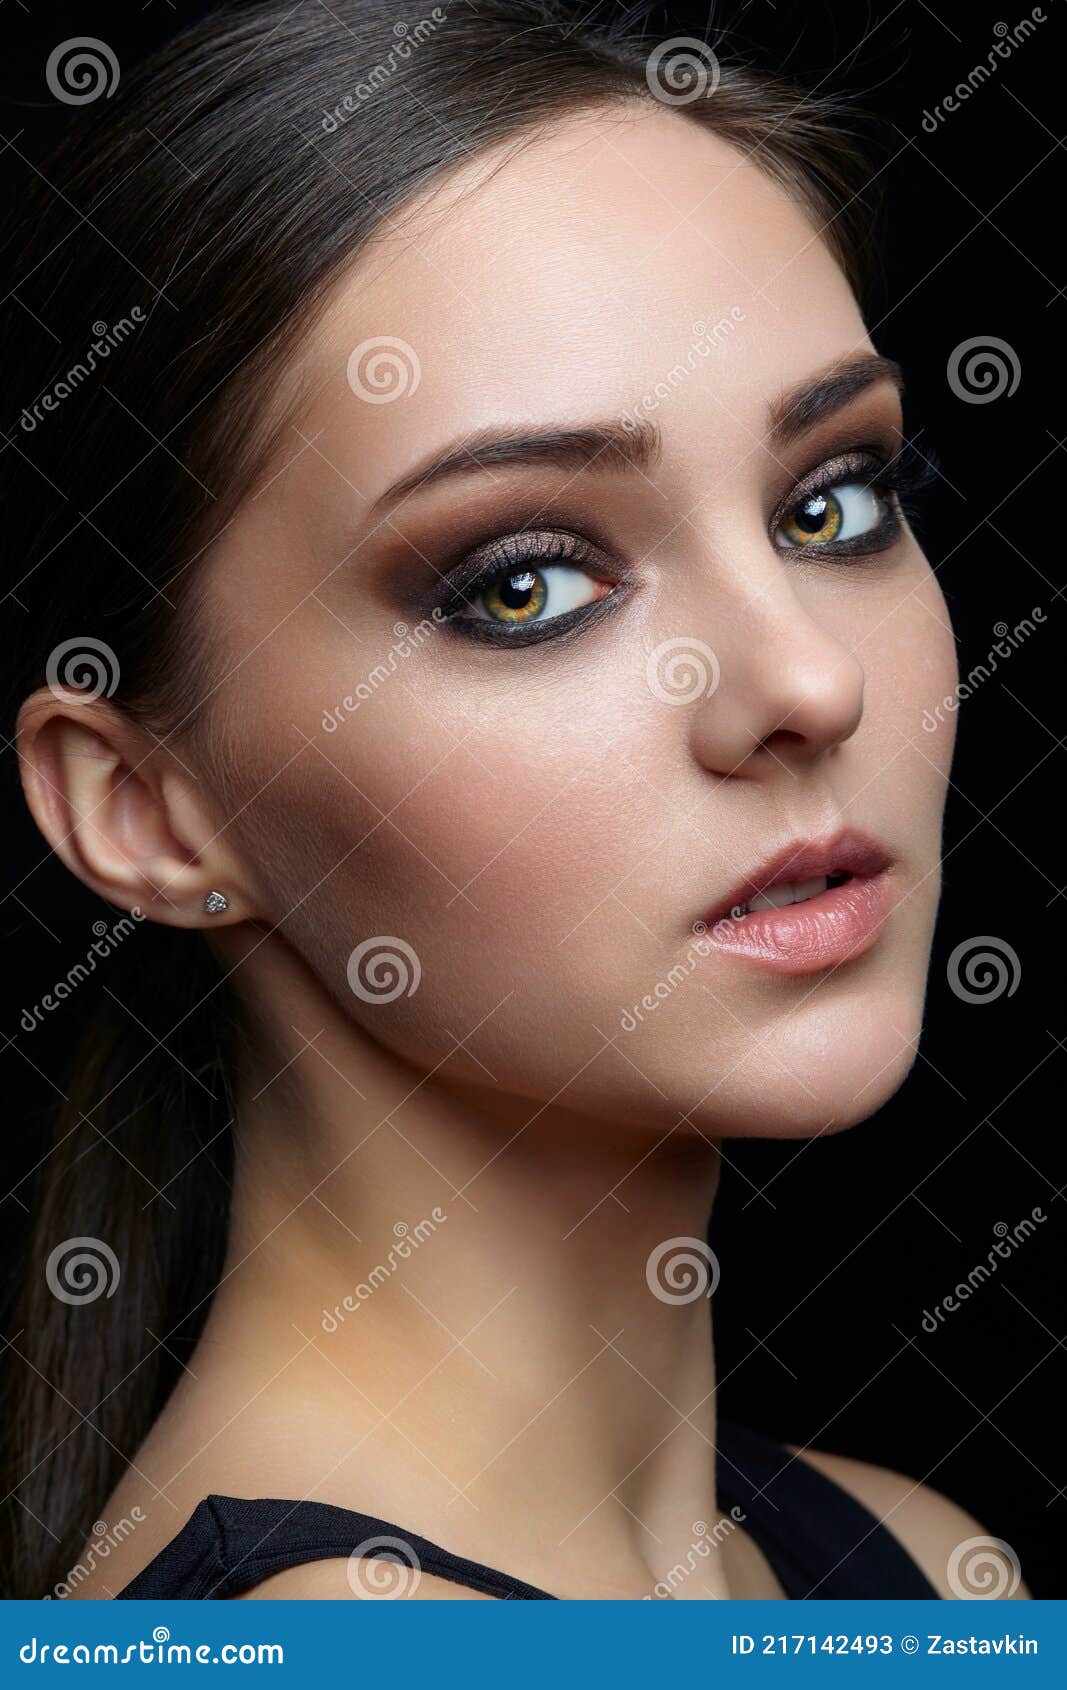 Retrato De Belleza De Mujer Joven. Chica Morena Con Noche Maquillaje  Femenino Y Vestido Negro Imagen de archivo - Imagen de hermoso, retrato:  217142493